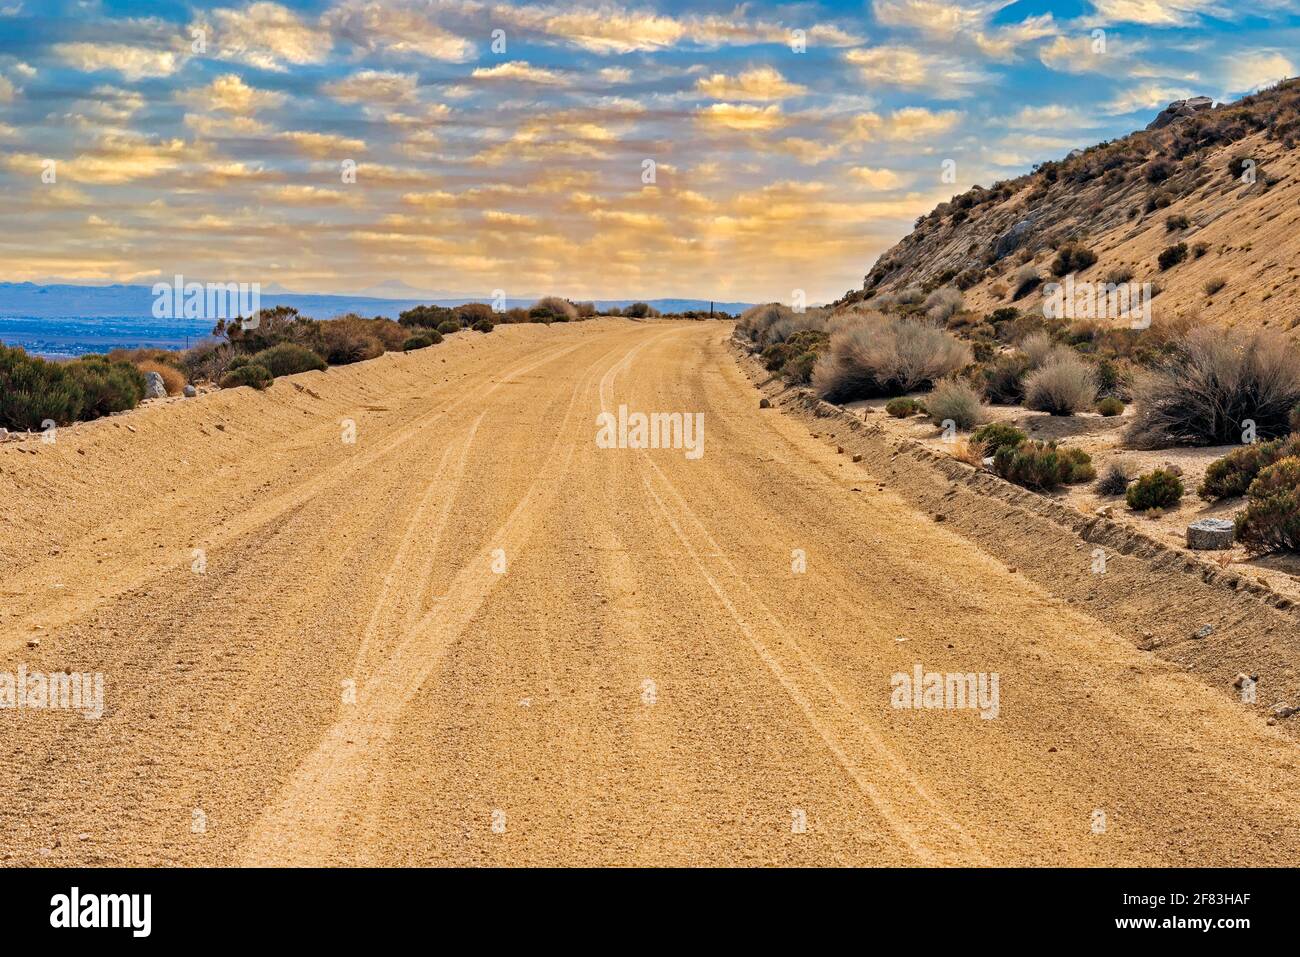 Nuvole gialle d'oro nei cieli blu sopra la solitaria strada sterrata del deserto che conduce verso l'orizzonte. Foto Stock